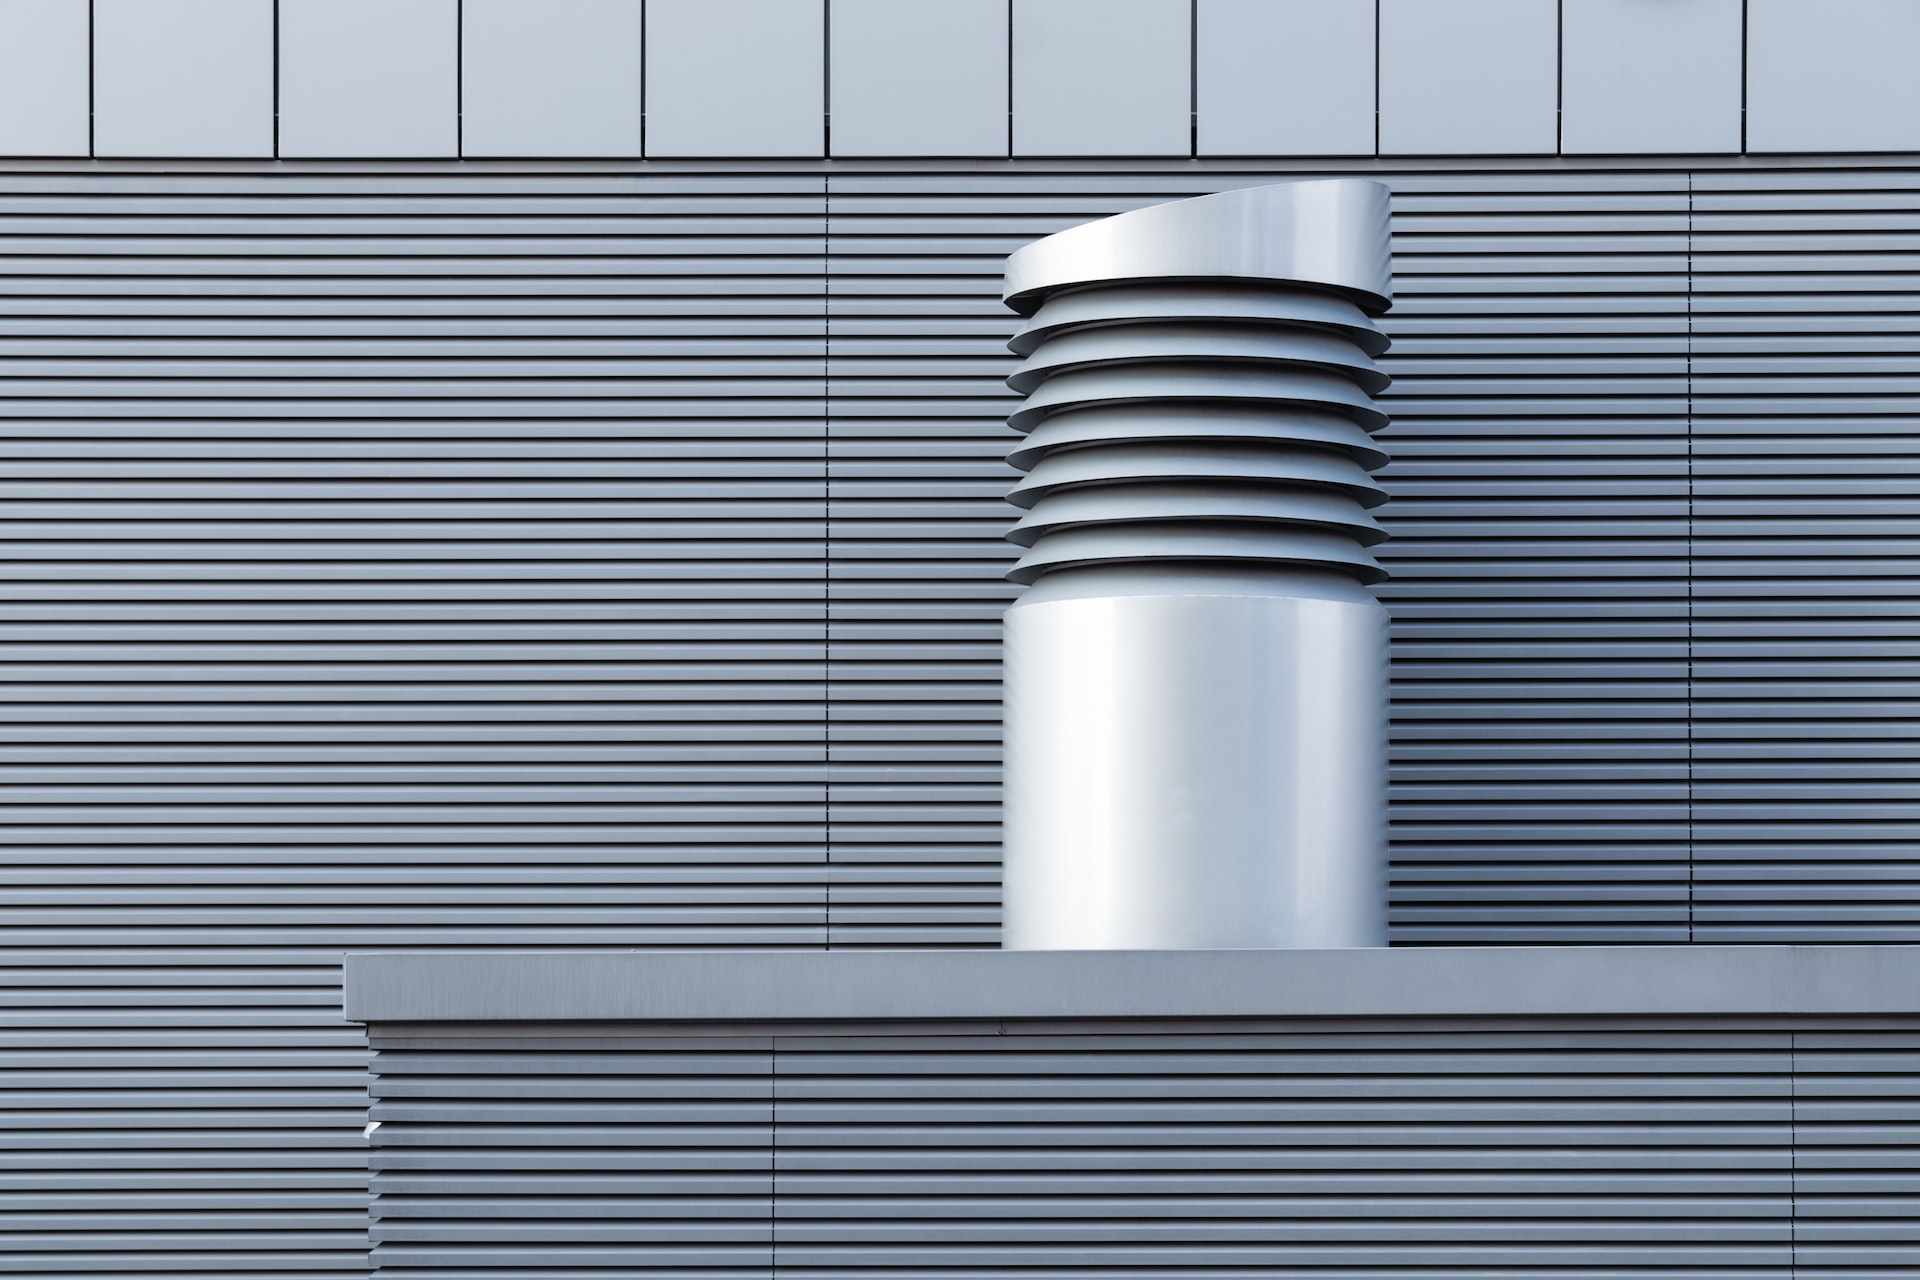 Ventilationssystemer er en vigtig del af enhver bygning